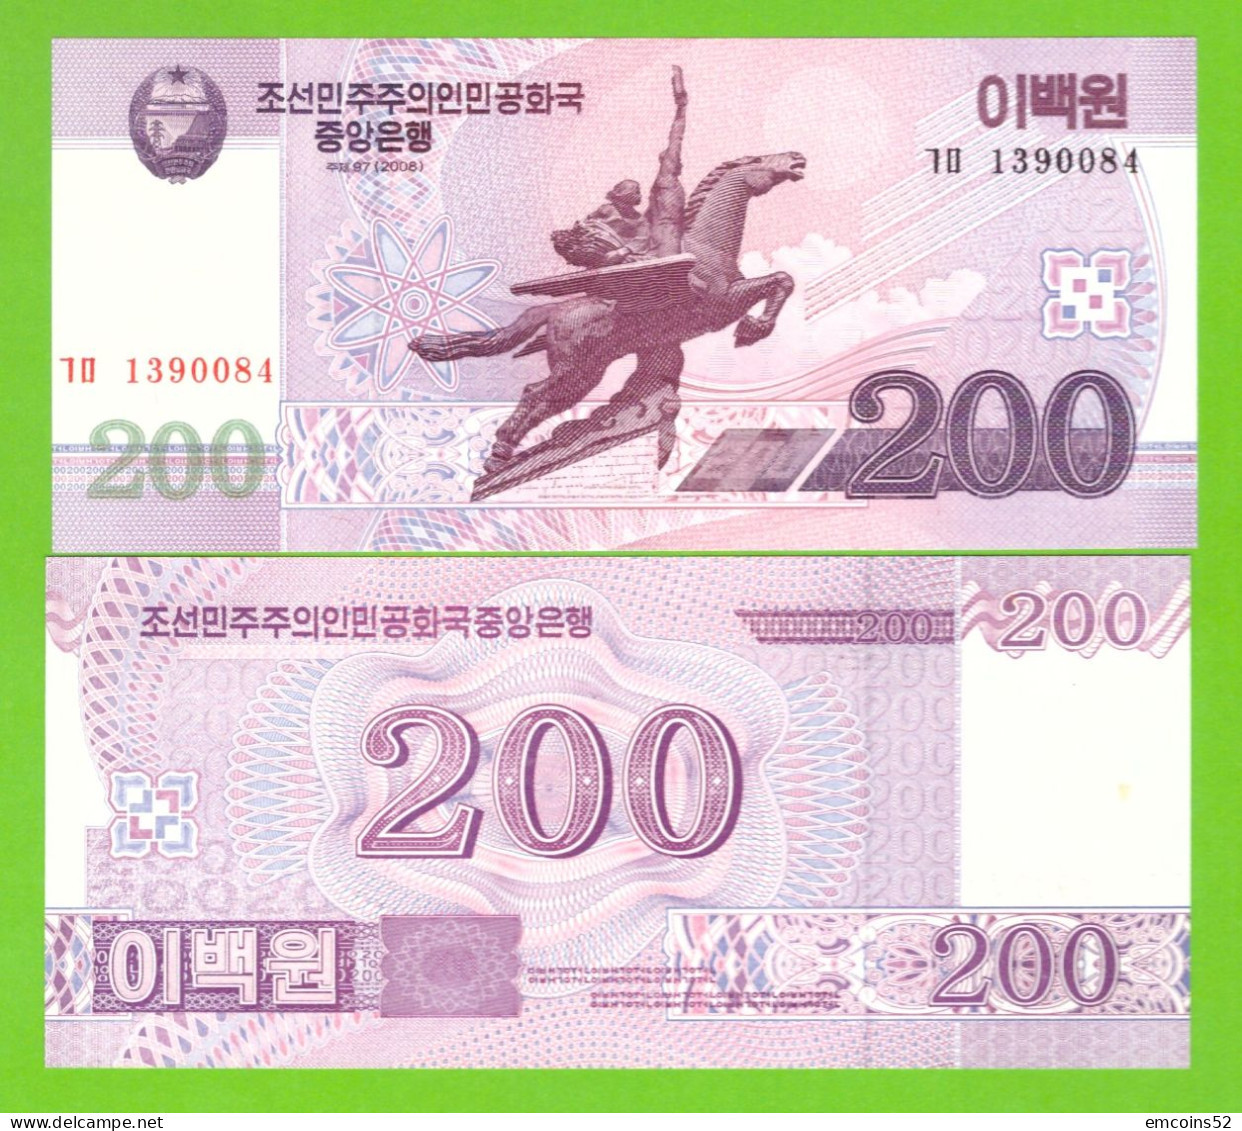 KOREA NORTH 200 WON 2008/2009 P-62(2) UNC - Corée Du Nord